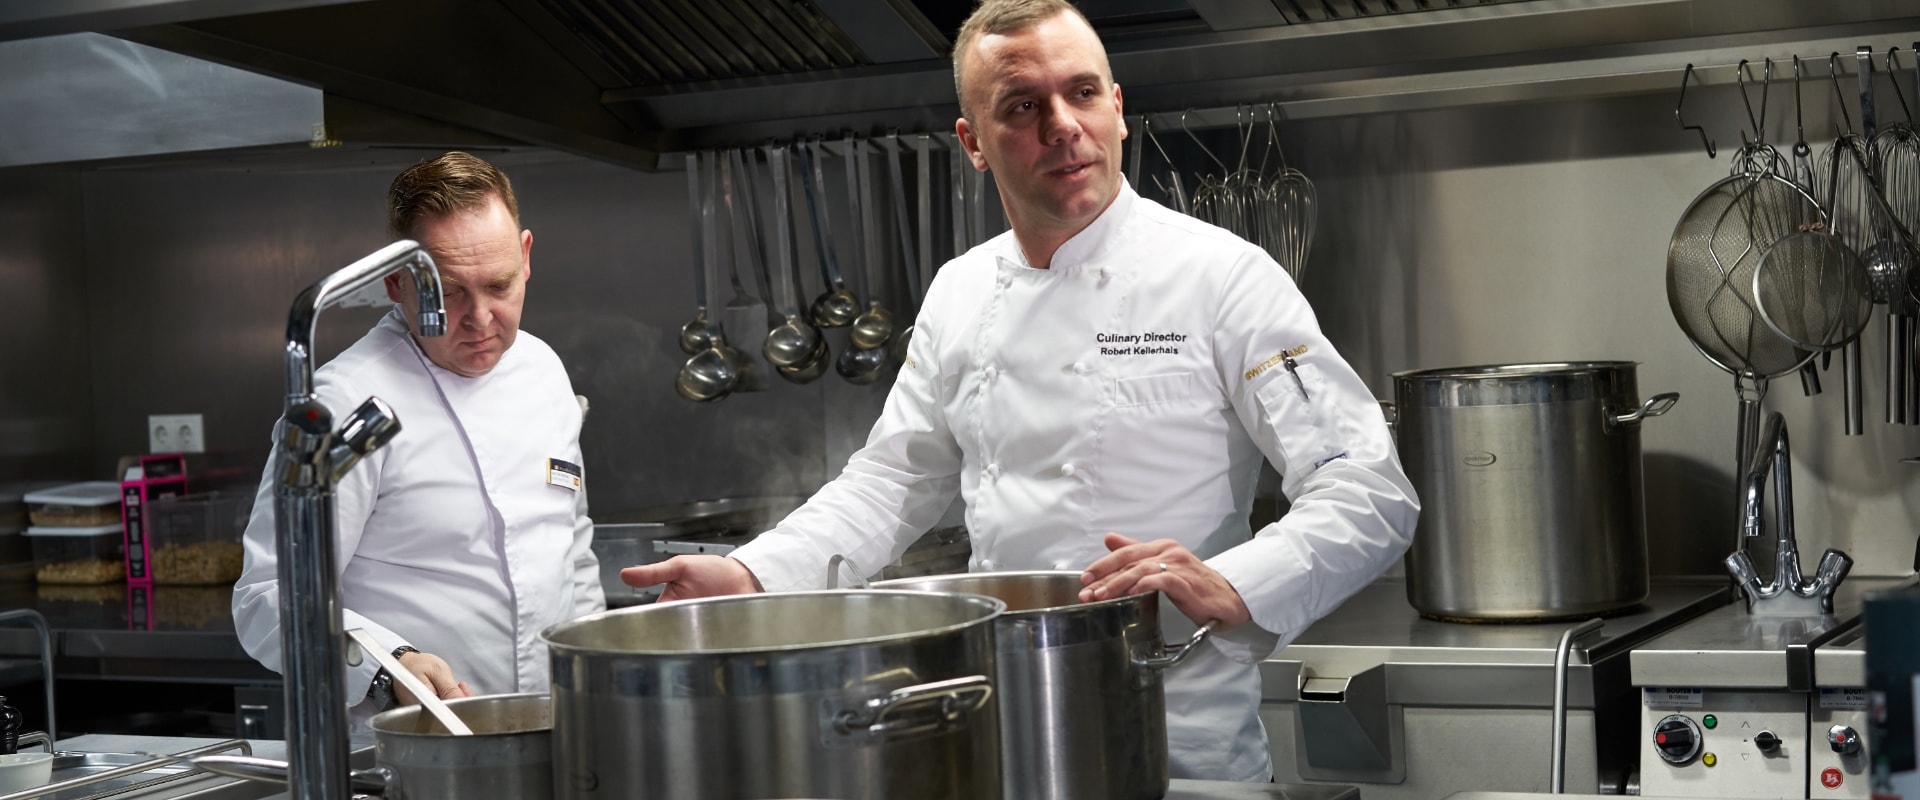 Robert kellerhals erc executive chef in galley behind large saucepan europe 12 5